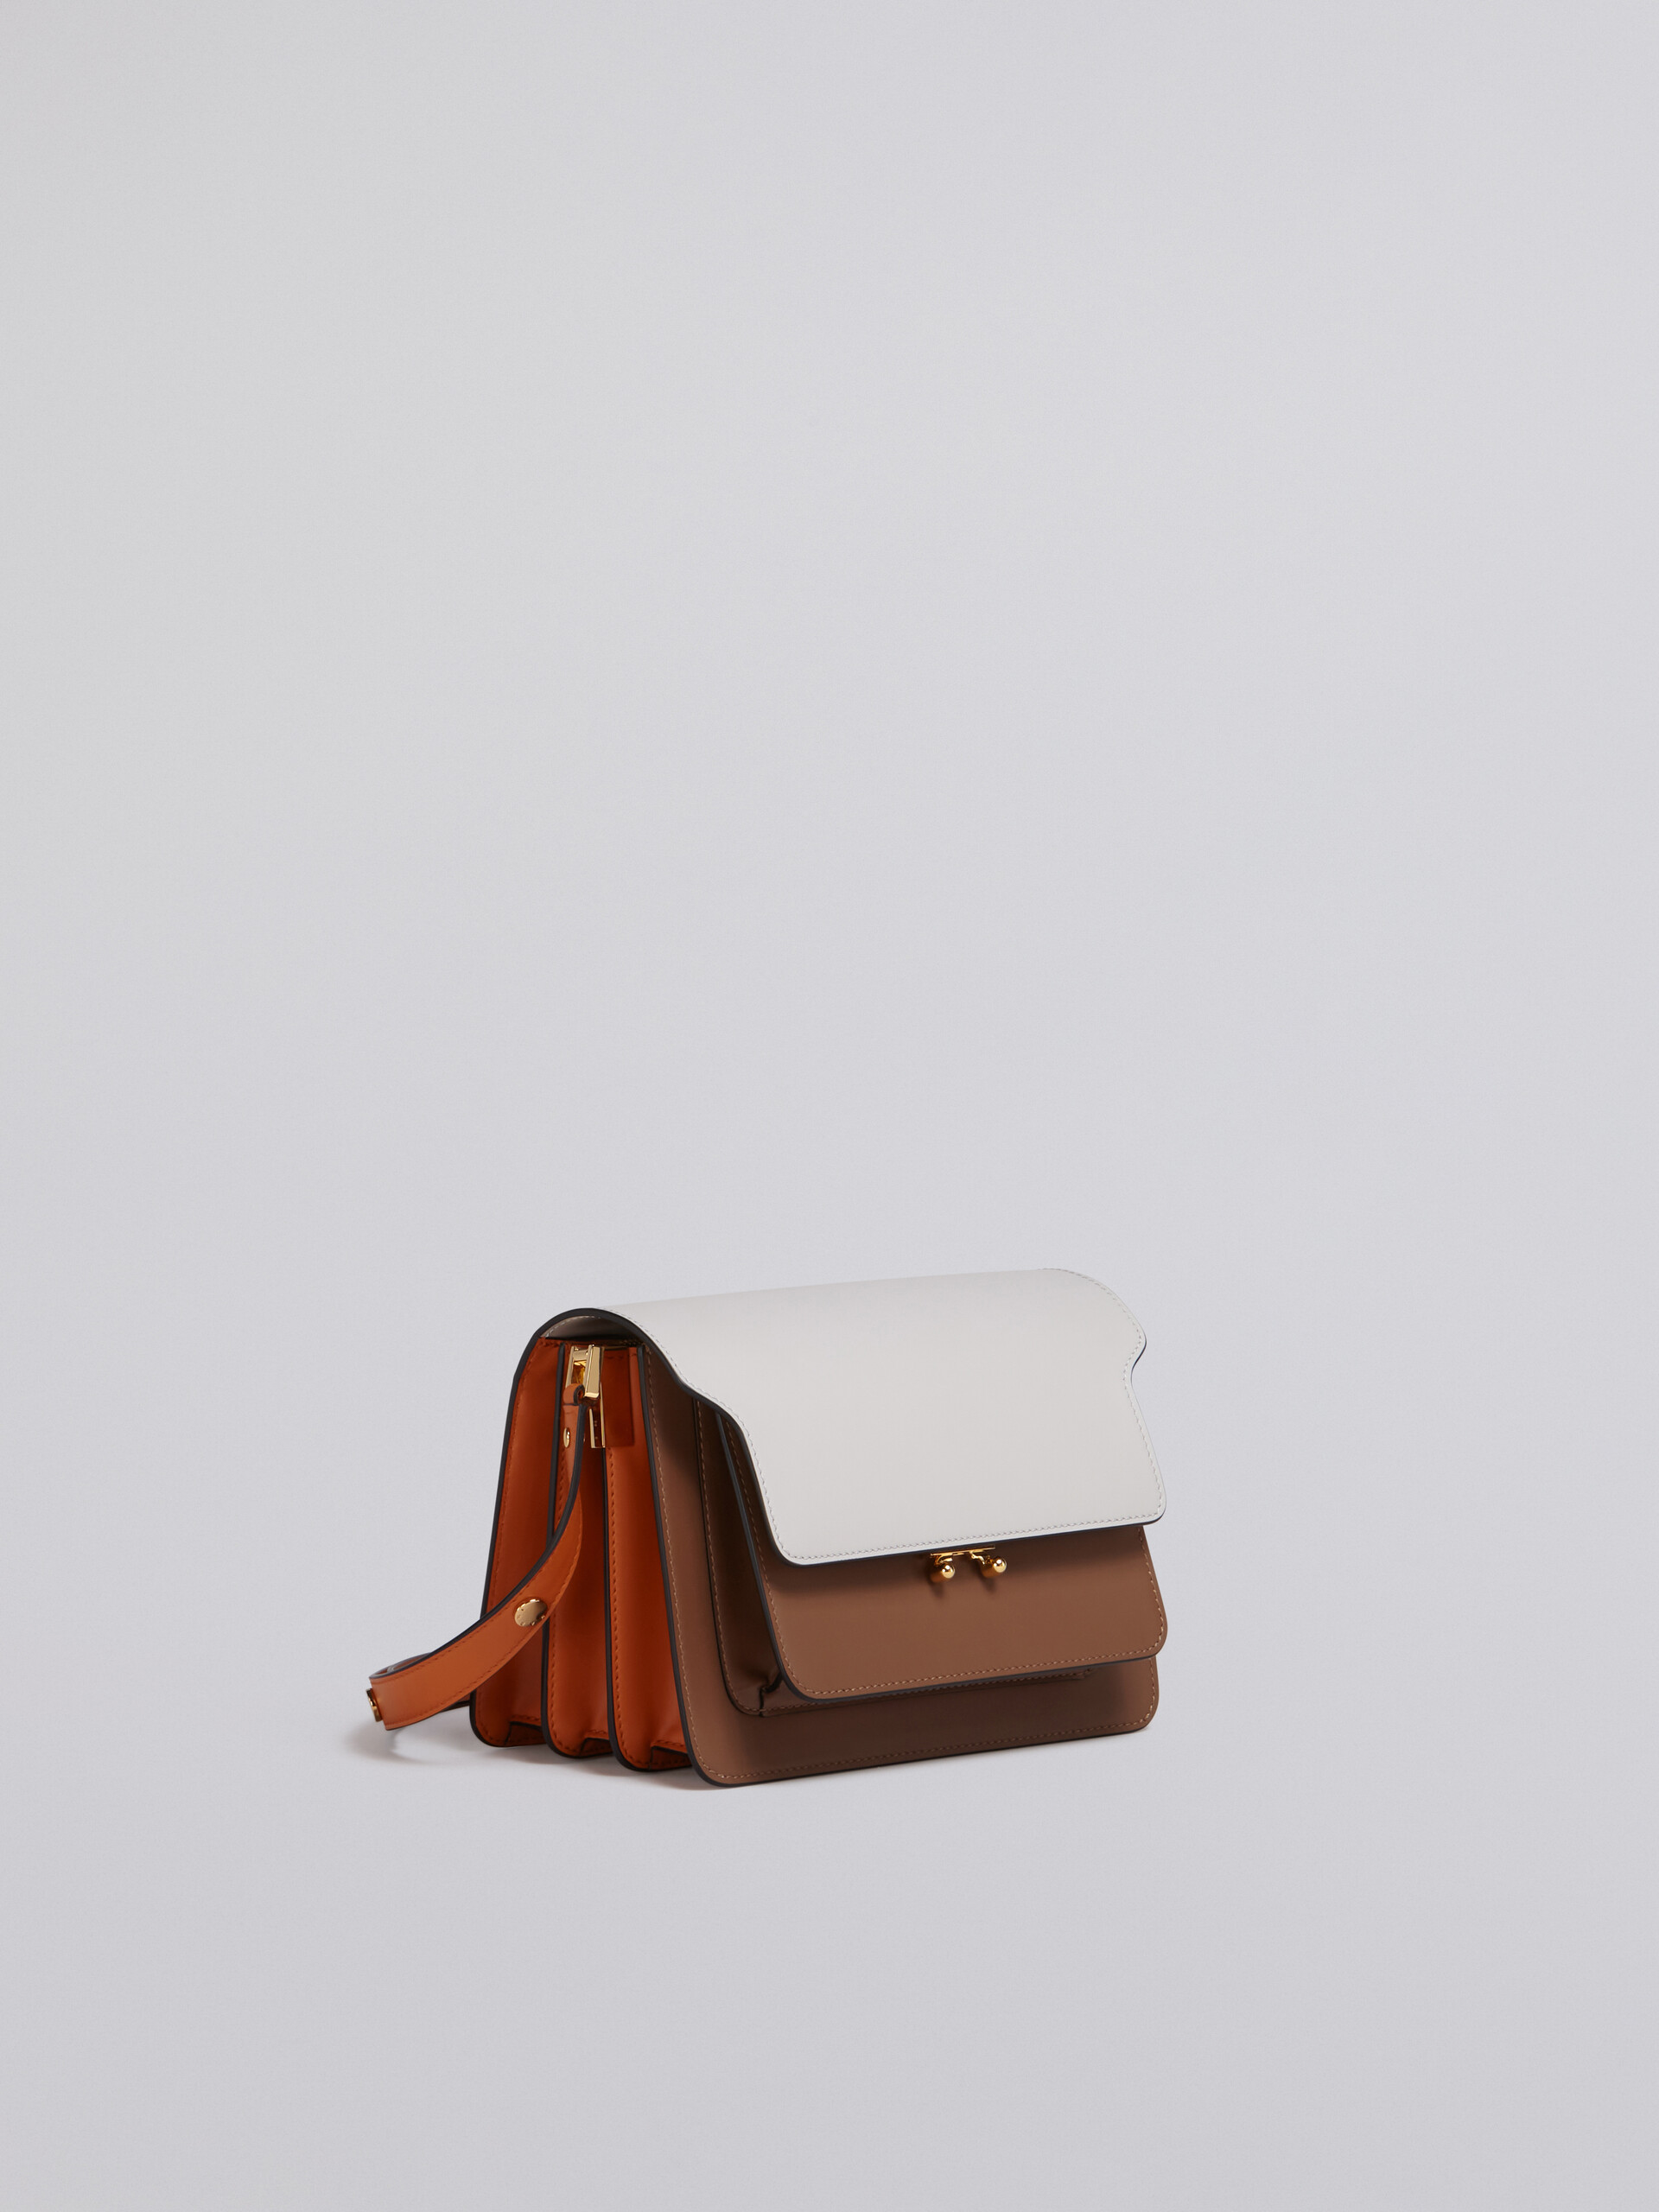 TRUNK bag in vitello liscio bianco marrone e arancione - Borse a spalla - Image 5